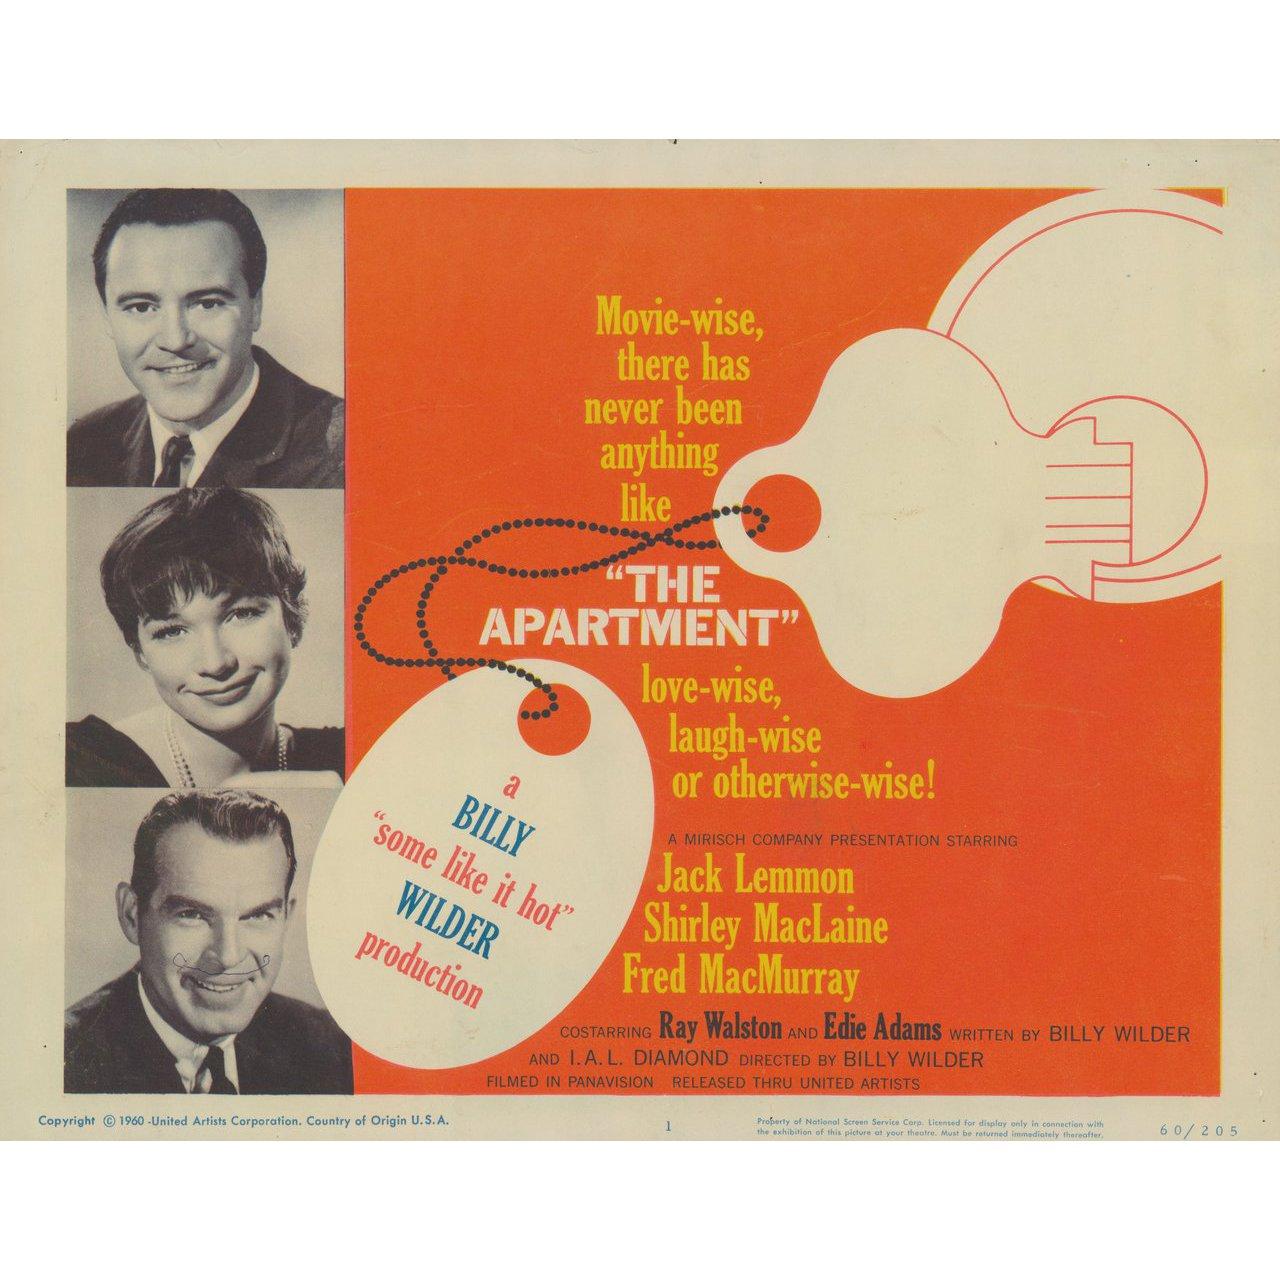 Original 1960 U.S. Titelkarte für den Film The Apartment von Billy Wilder mit Jack Lemmon / Shirley MacLaine / Fred MacMurray / Ray Walston. Sehr guter Zustand, zerknittert mit Kugelschreiberfleck. Bitte beachten Sie: Die Größe ist in Zoll angegeben